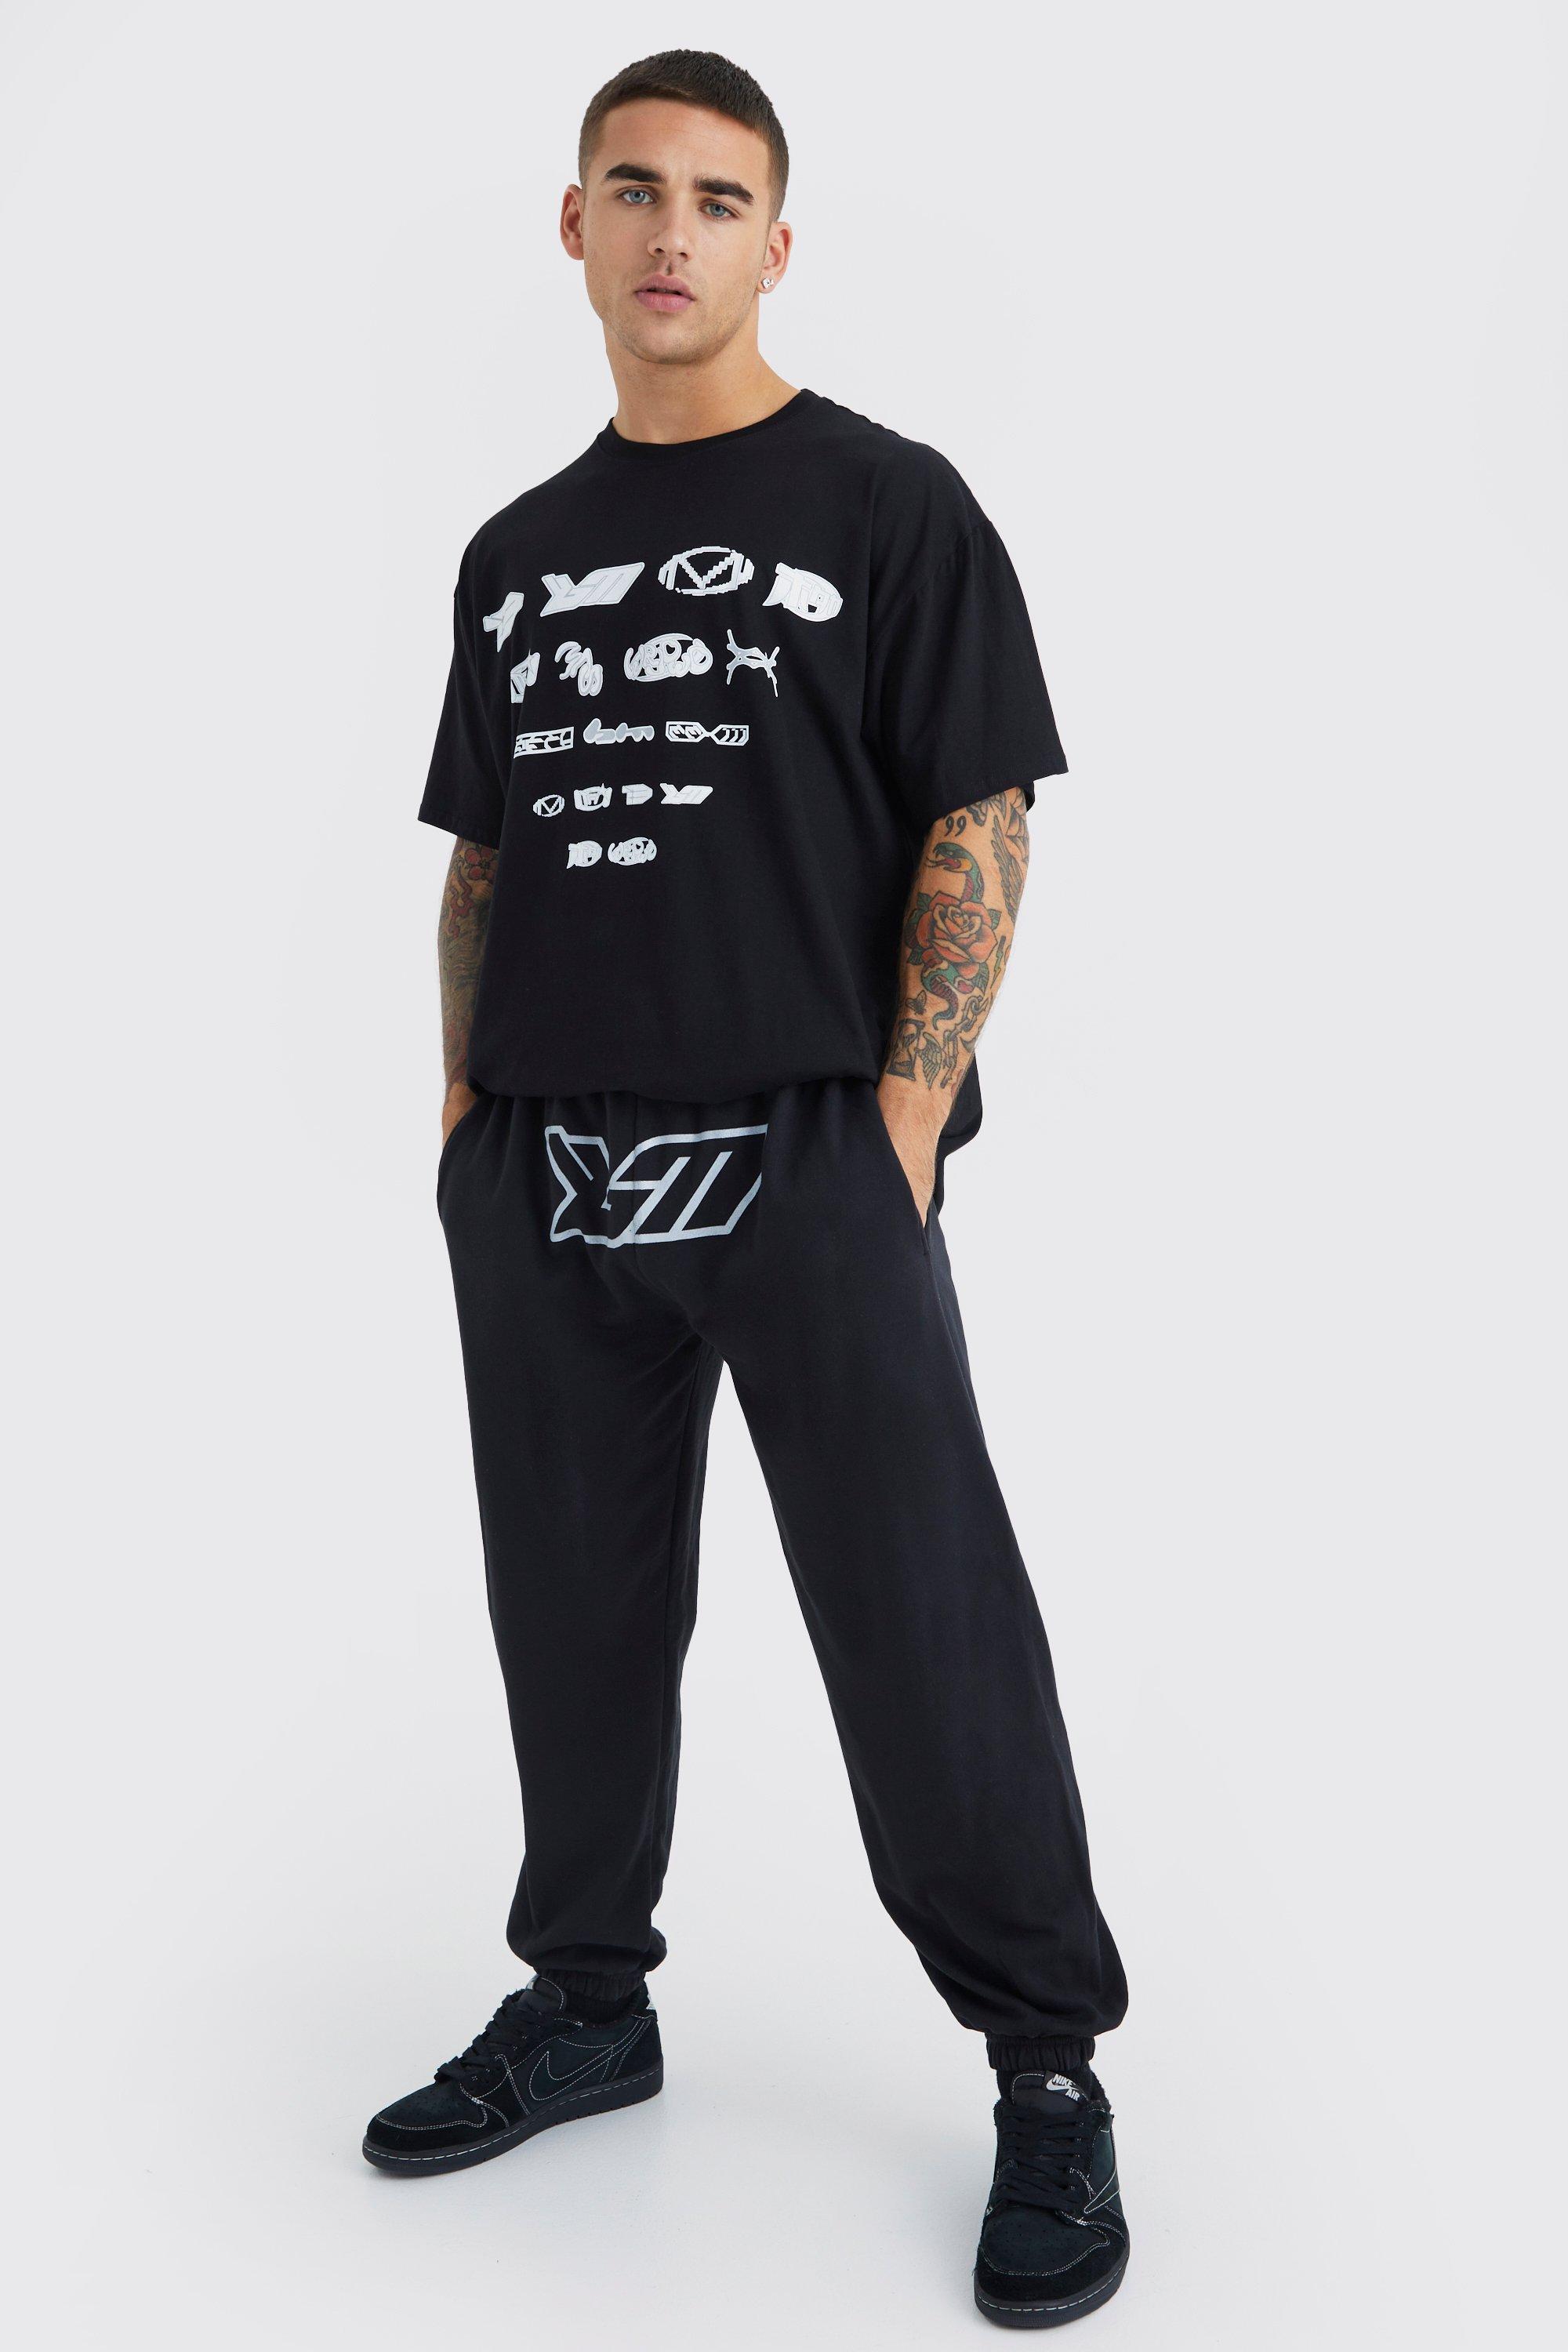 Mens Black Oversized Bm Crotch Print T-shirt & Jogger Set, Black